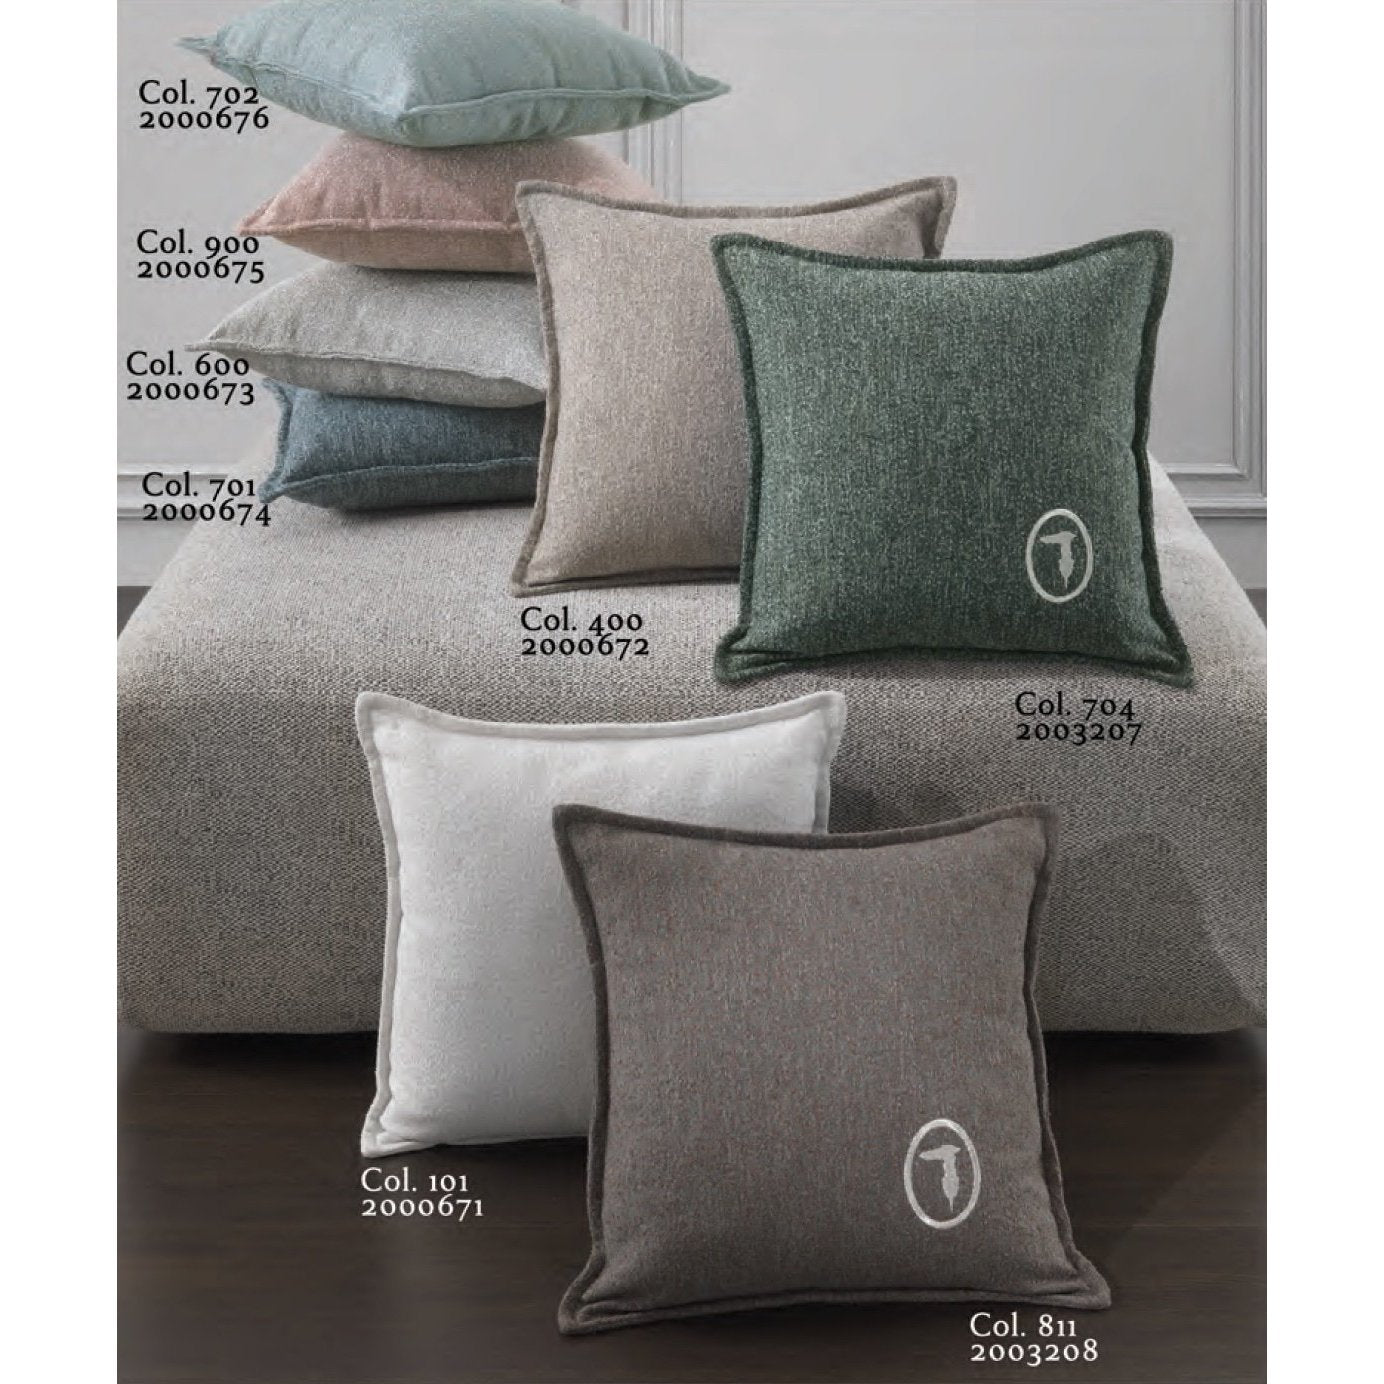 Decorative pillow Grains Trussardi